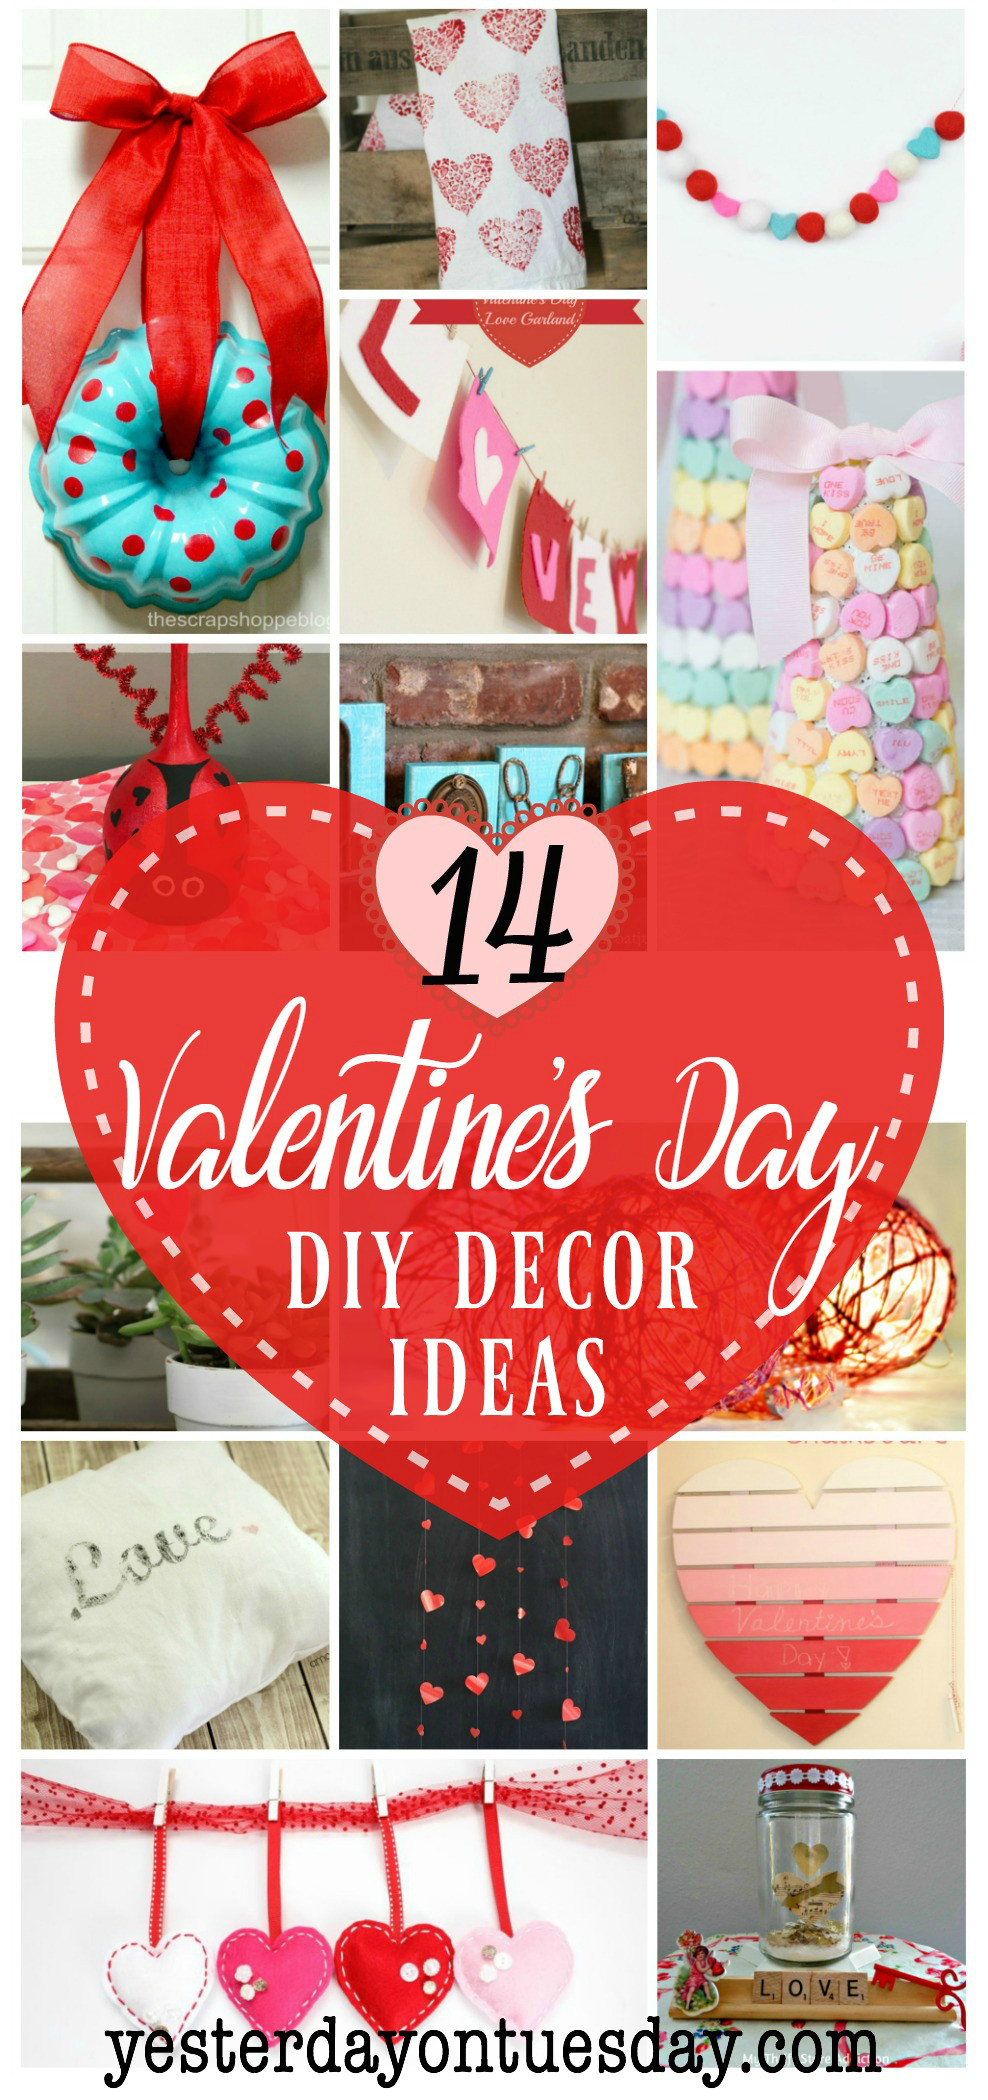 Valentines Day Ideas Pinterest
 14 Valentine s Day Decor Ideas